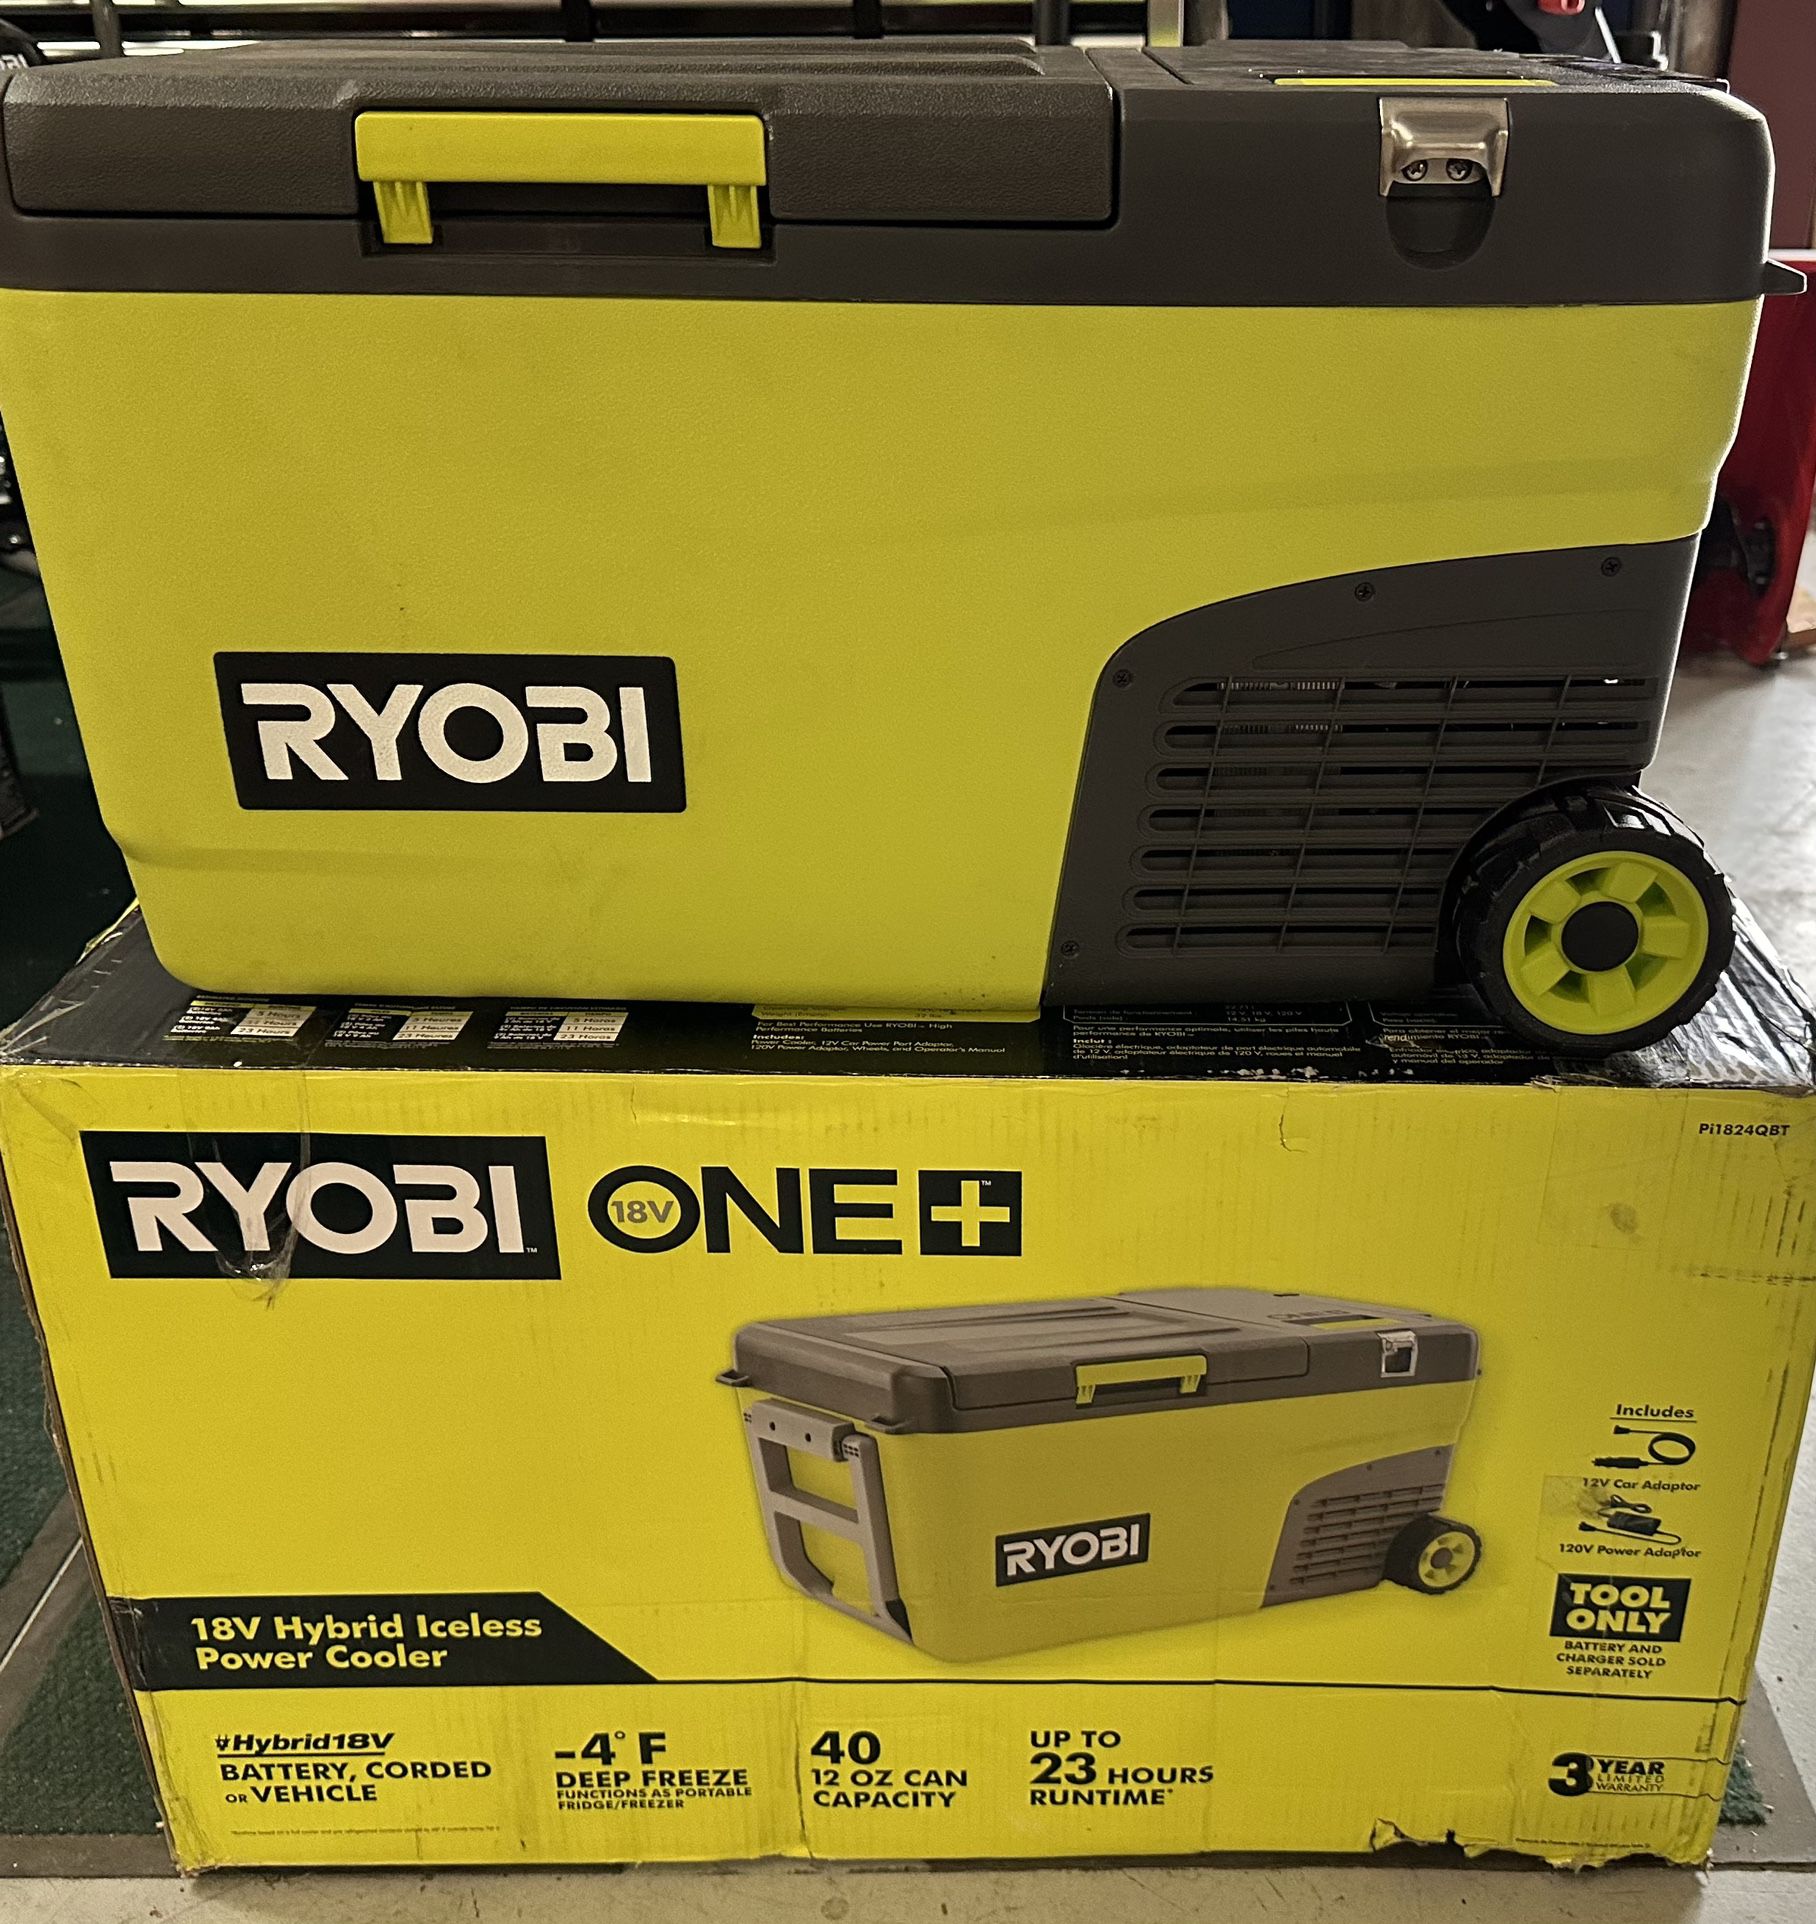 RYOBI ONE+ 18V 24 Qt. Hybrid Battery Powered Iceless Cooler (Tool Only)